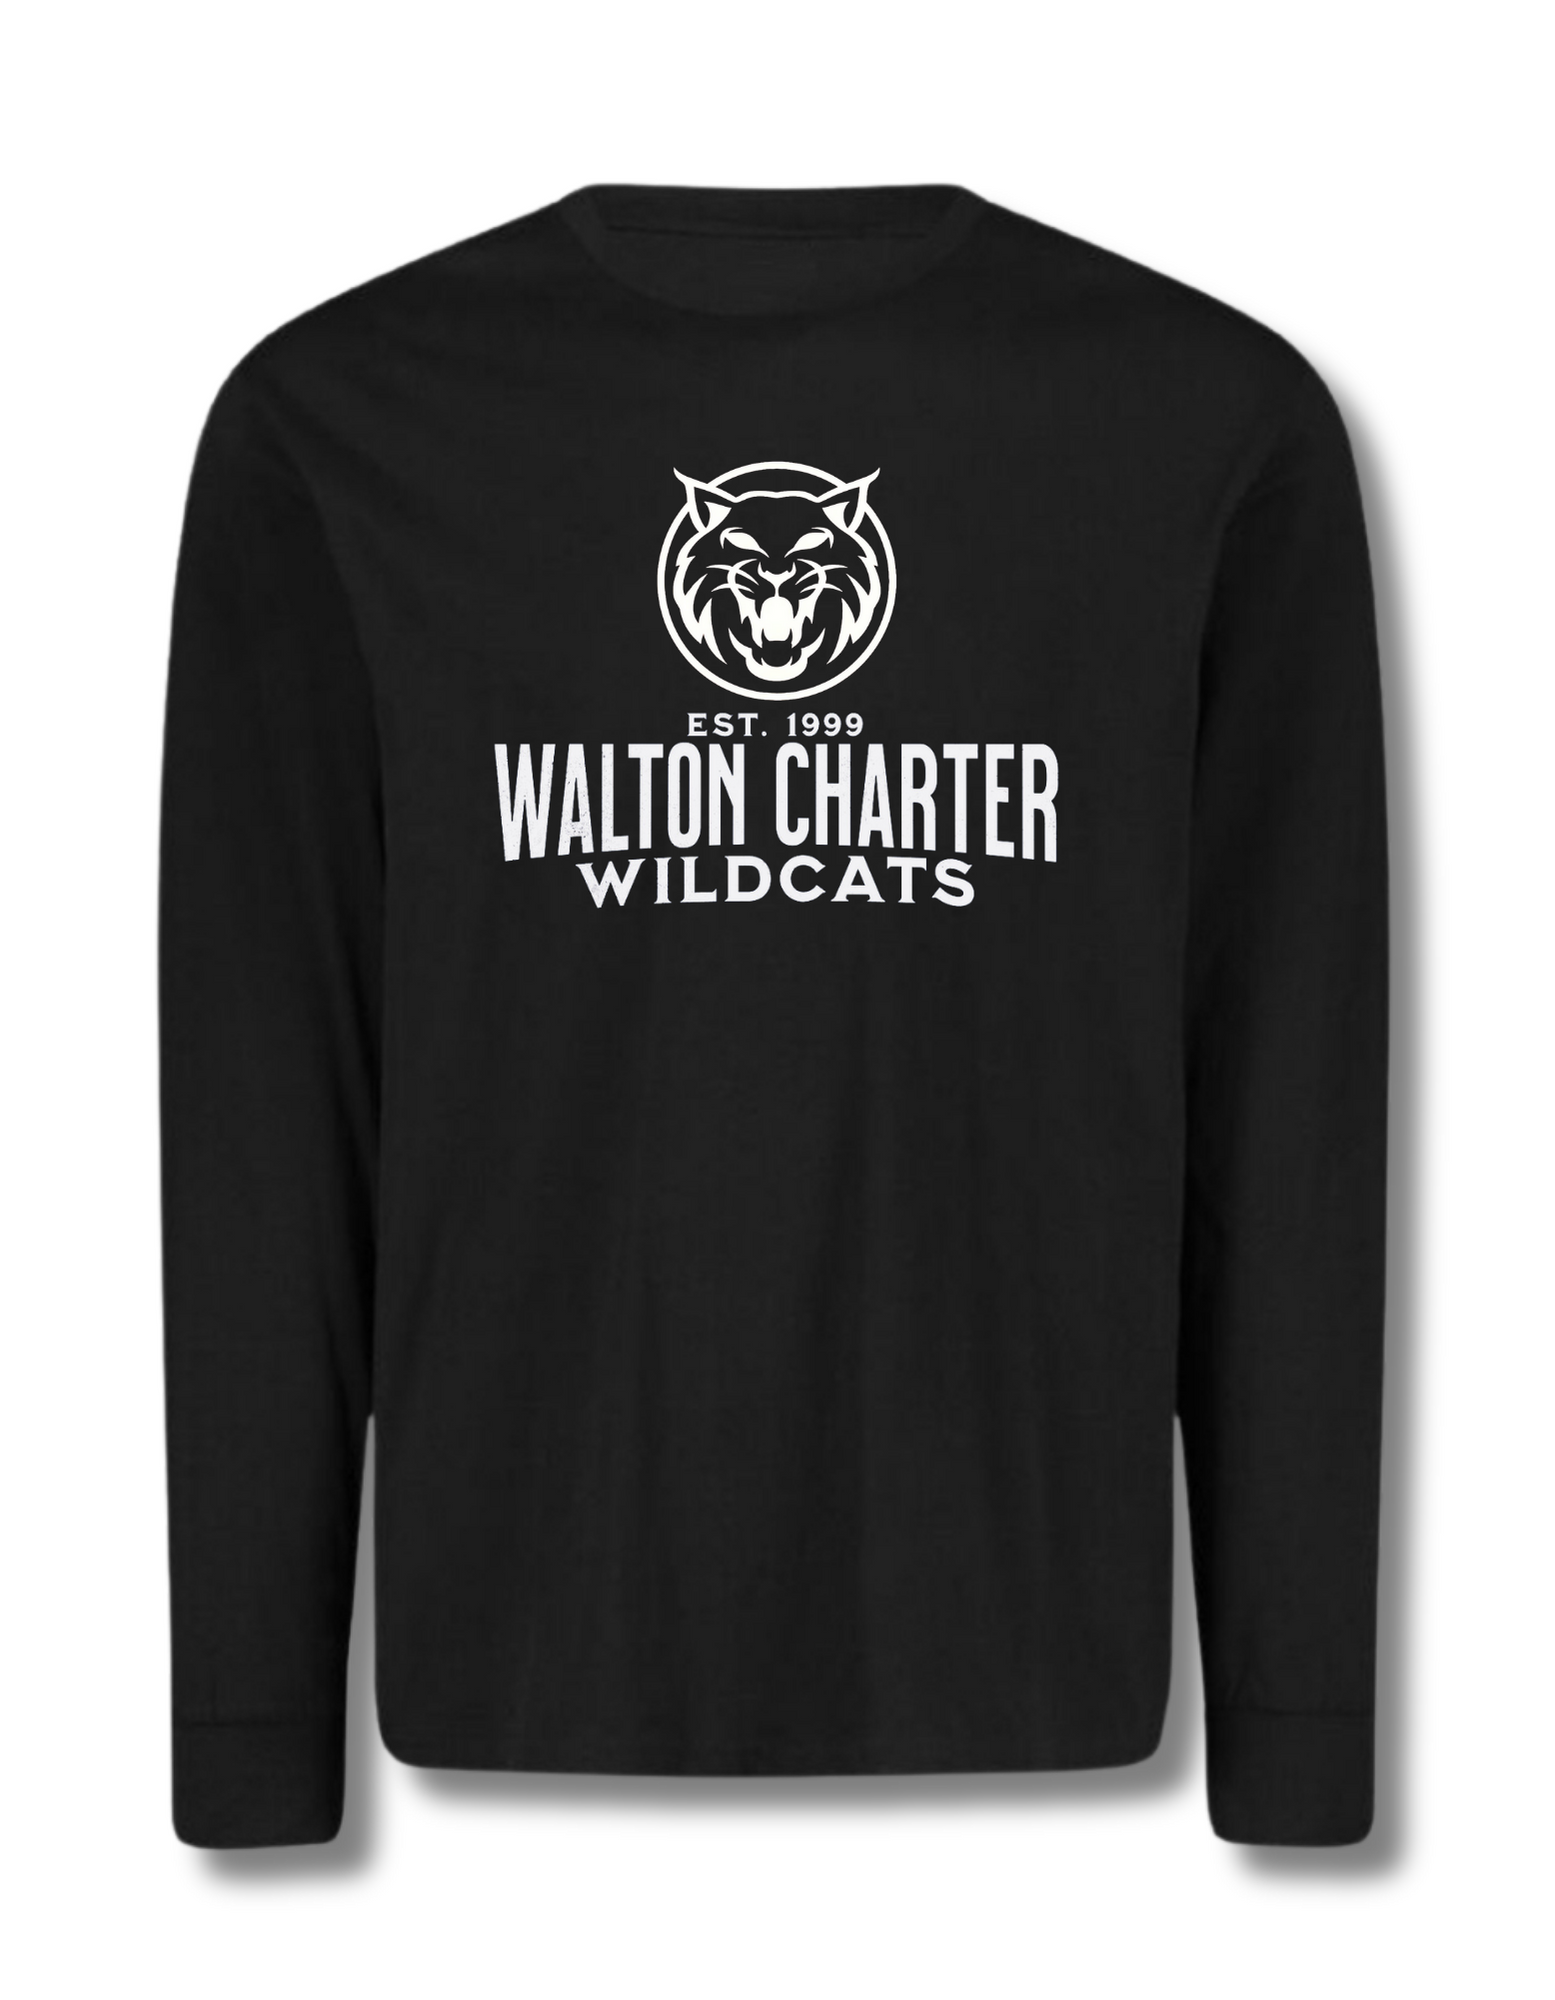 Walton Charter